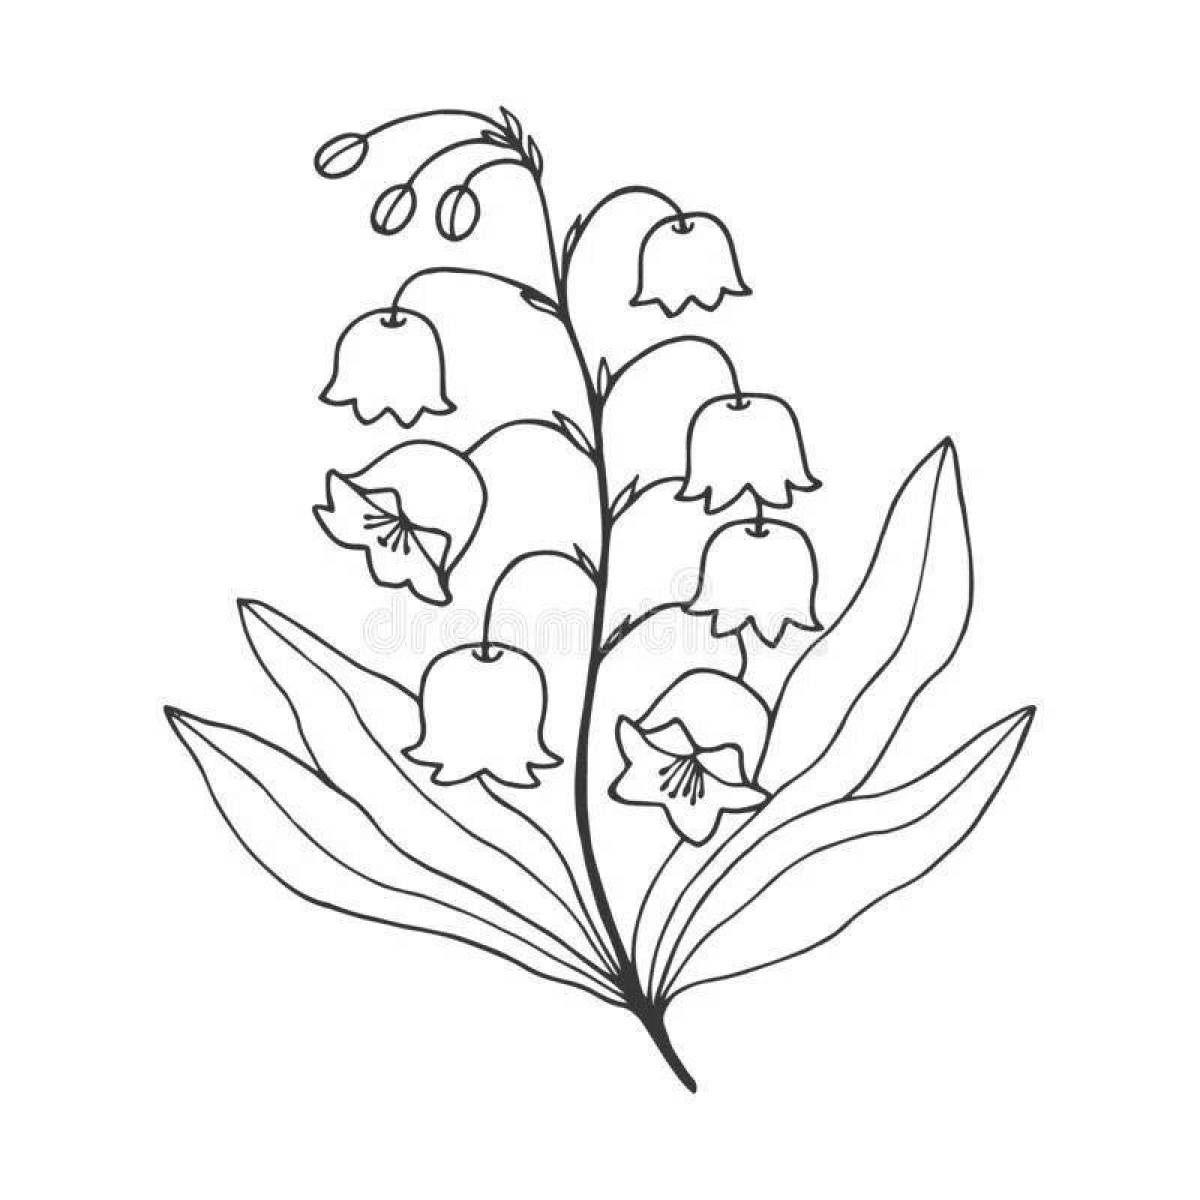 Раскраска цветущий майский ландыш